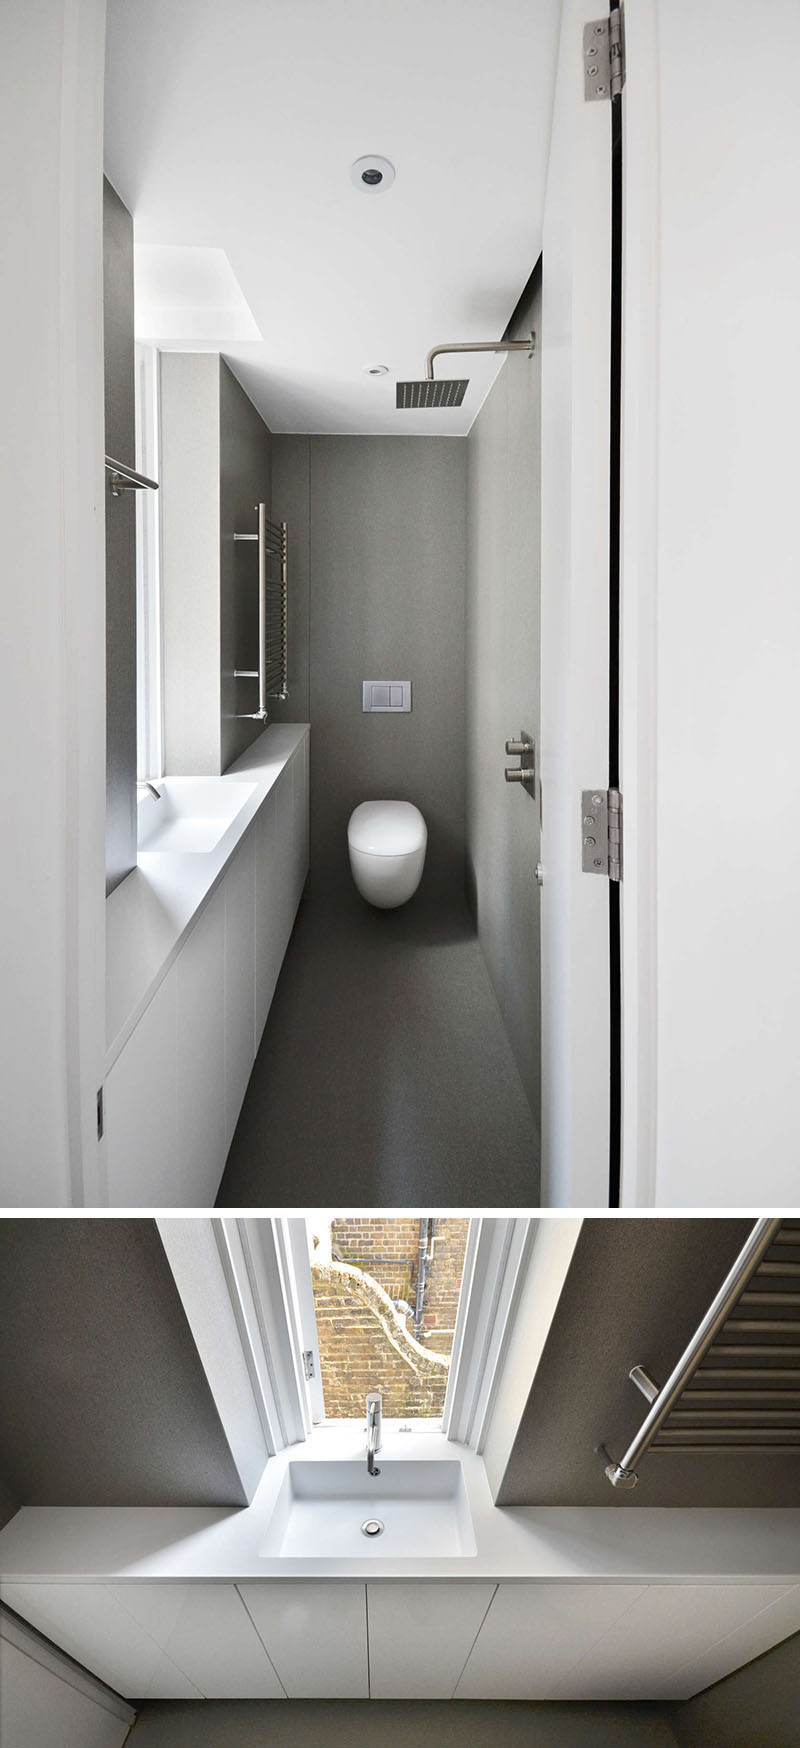 Ванная комната в этой лондонской квартире маленькая и очень длинная, поэтому им расположить душевую лейку напротив туалетного столика и раковины 